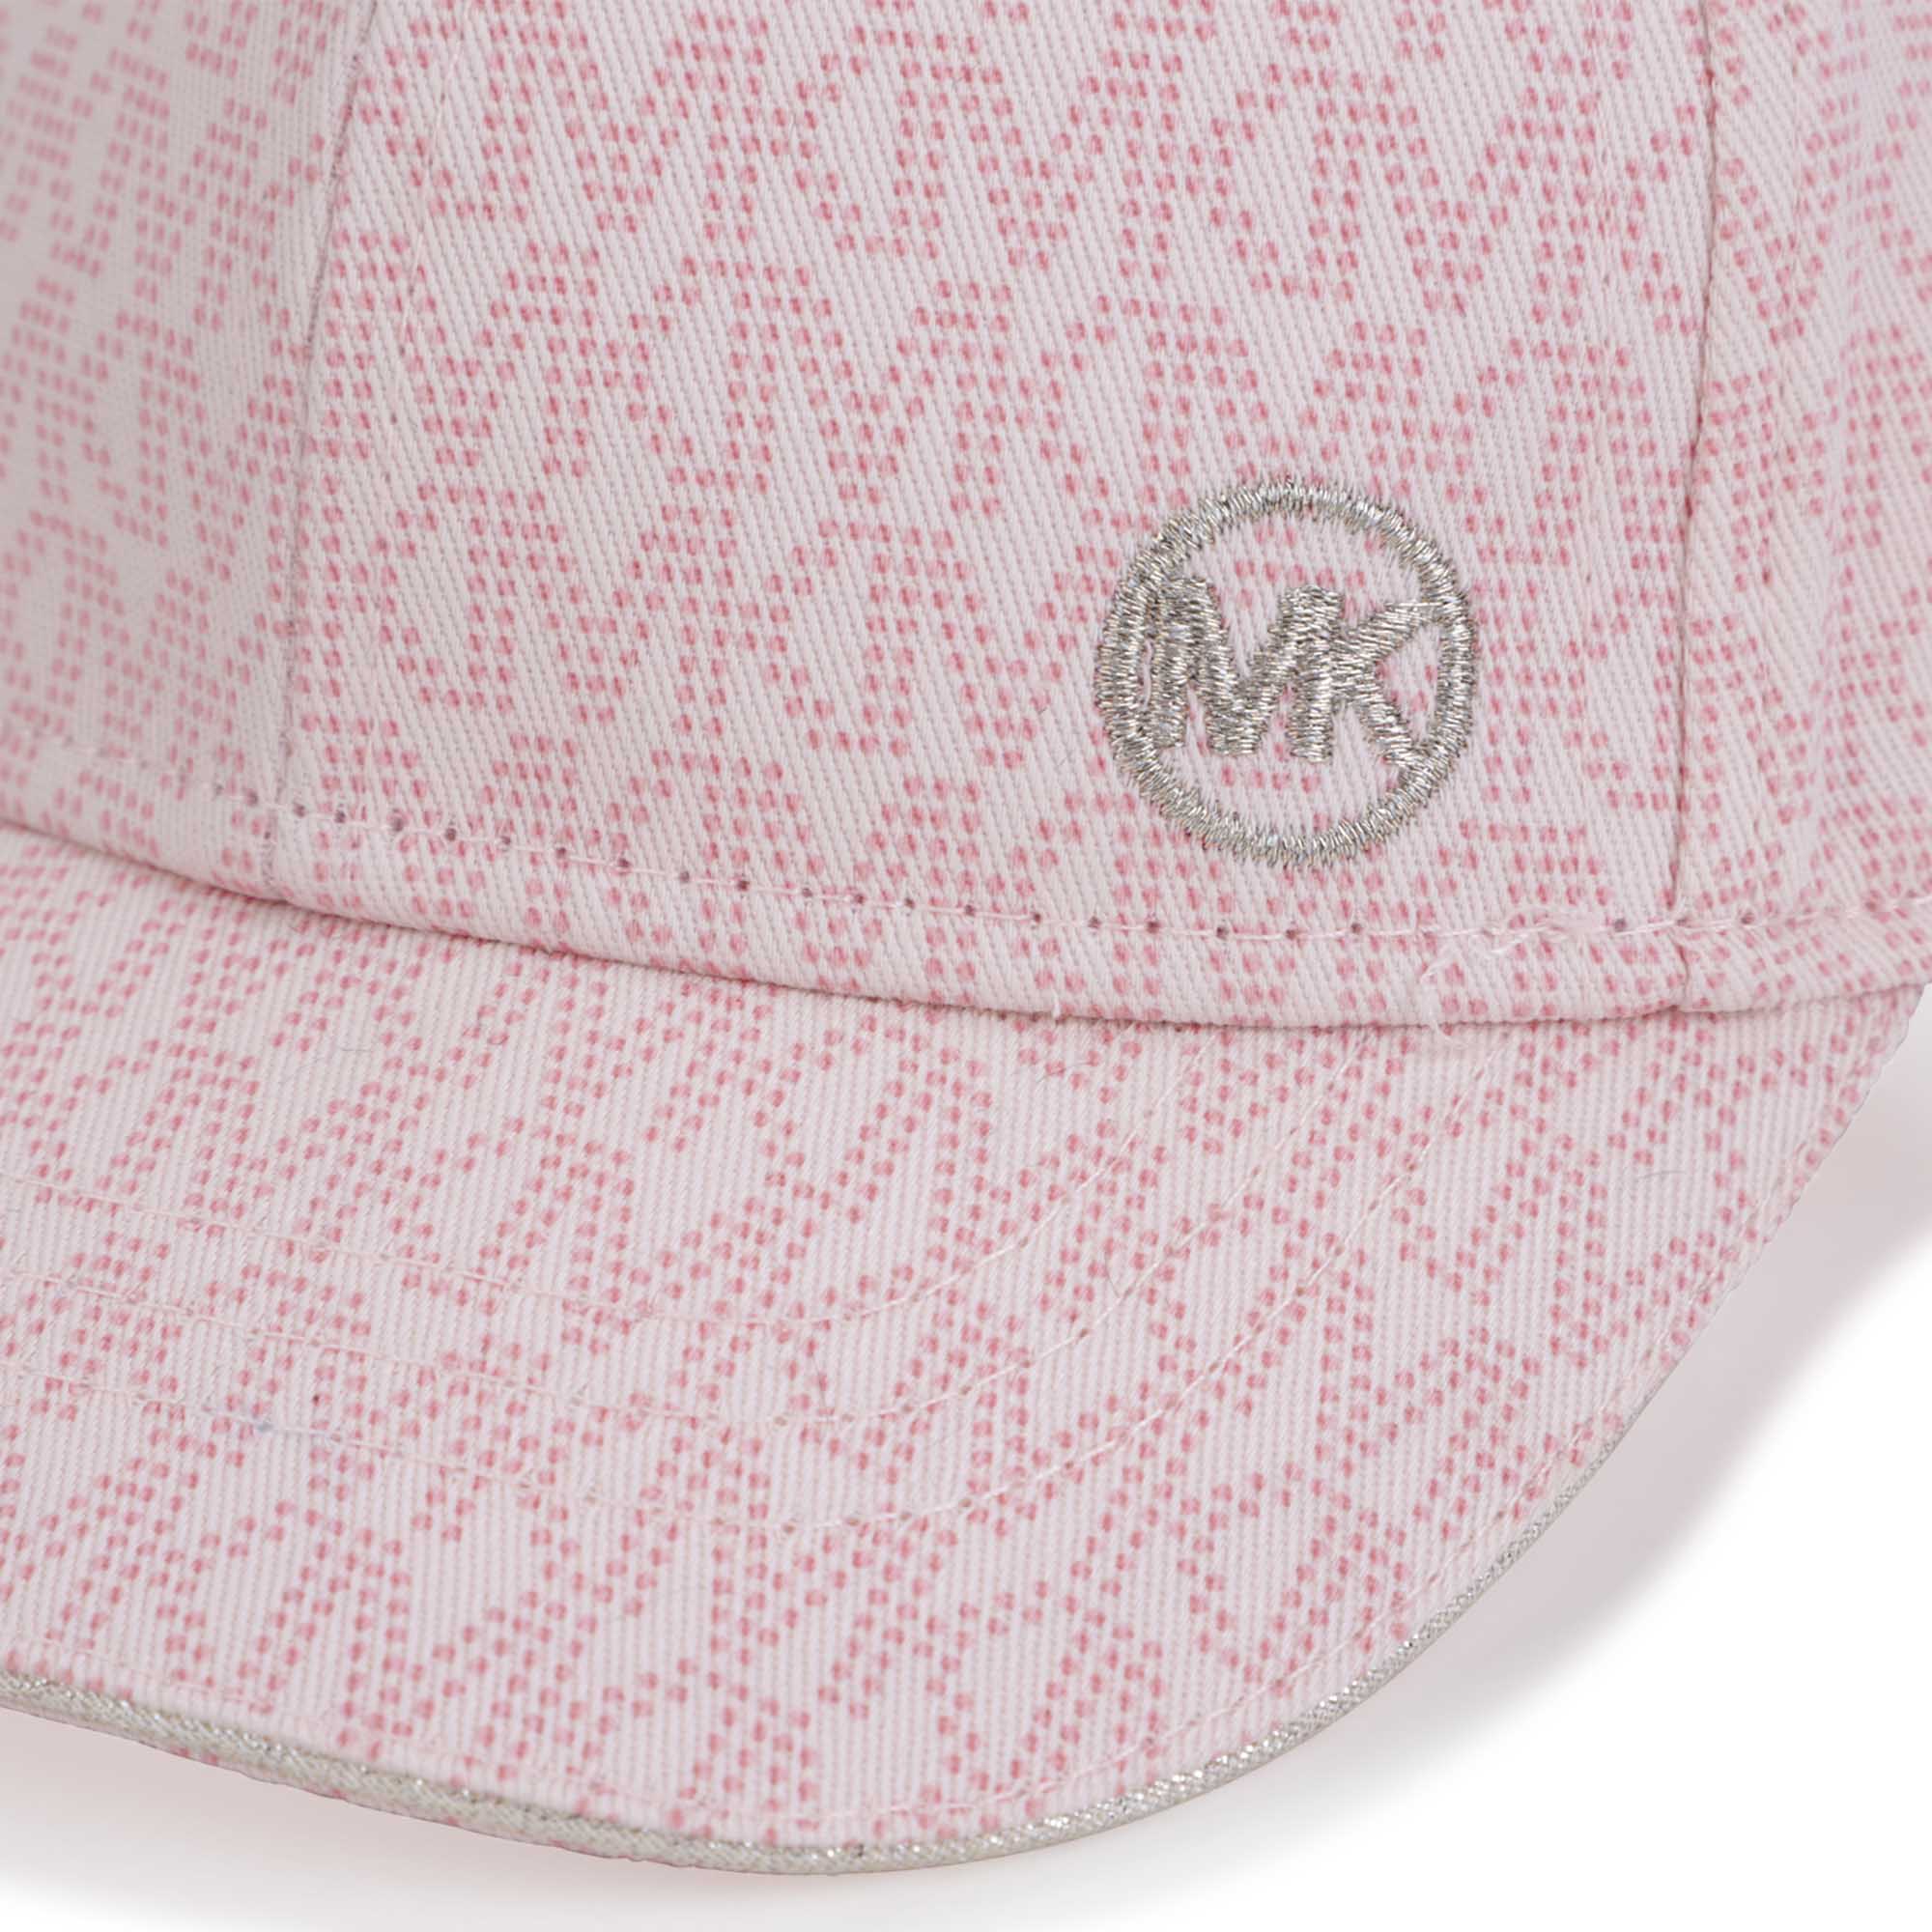 Cotton baseball cap MICHAEL KORS for GIRL